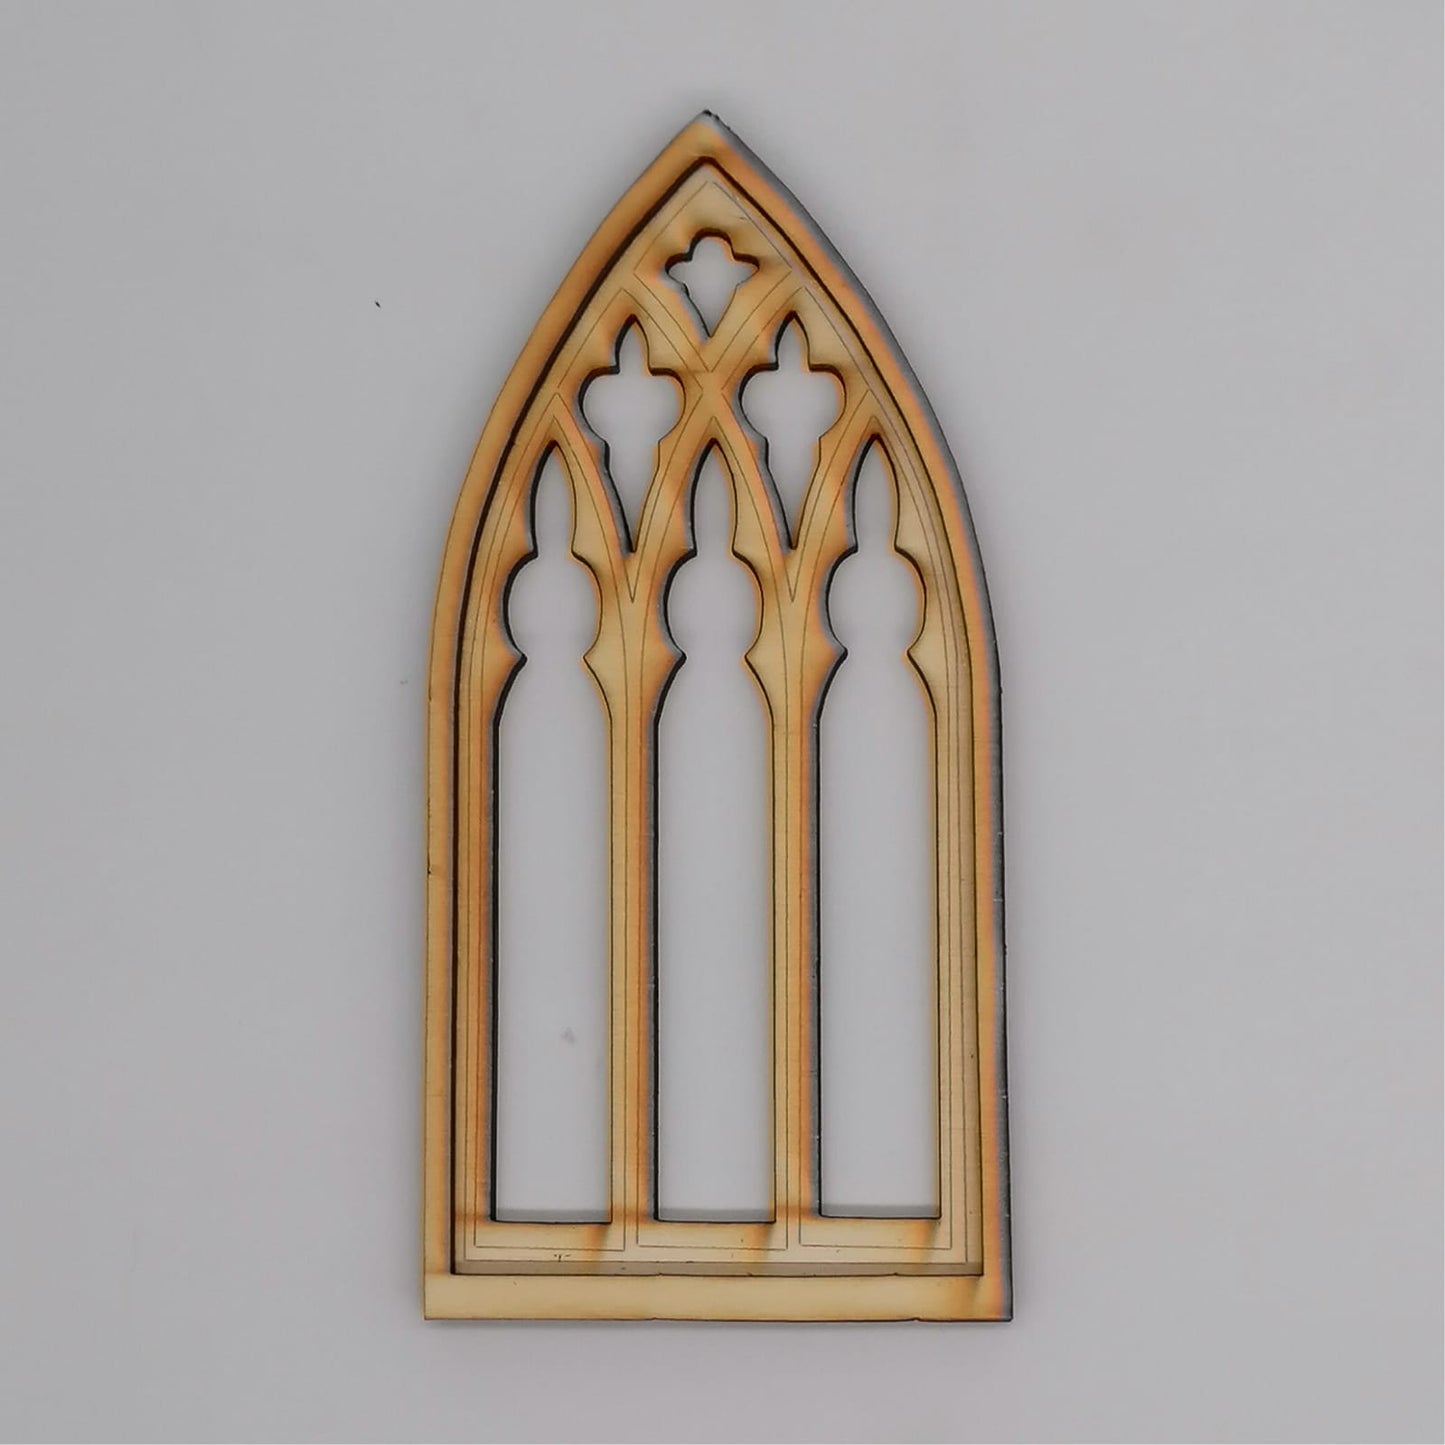 Gothik Miniatur Fenster - Design A - Miniaturen